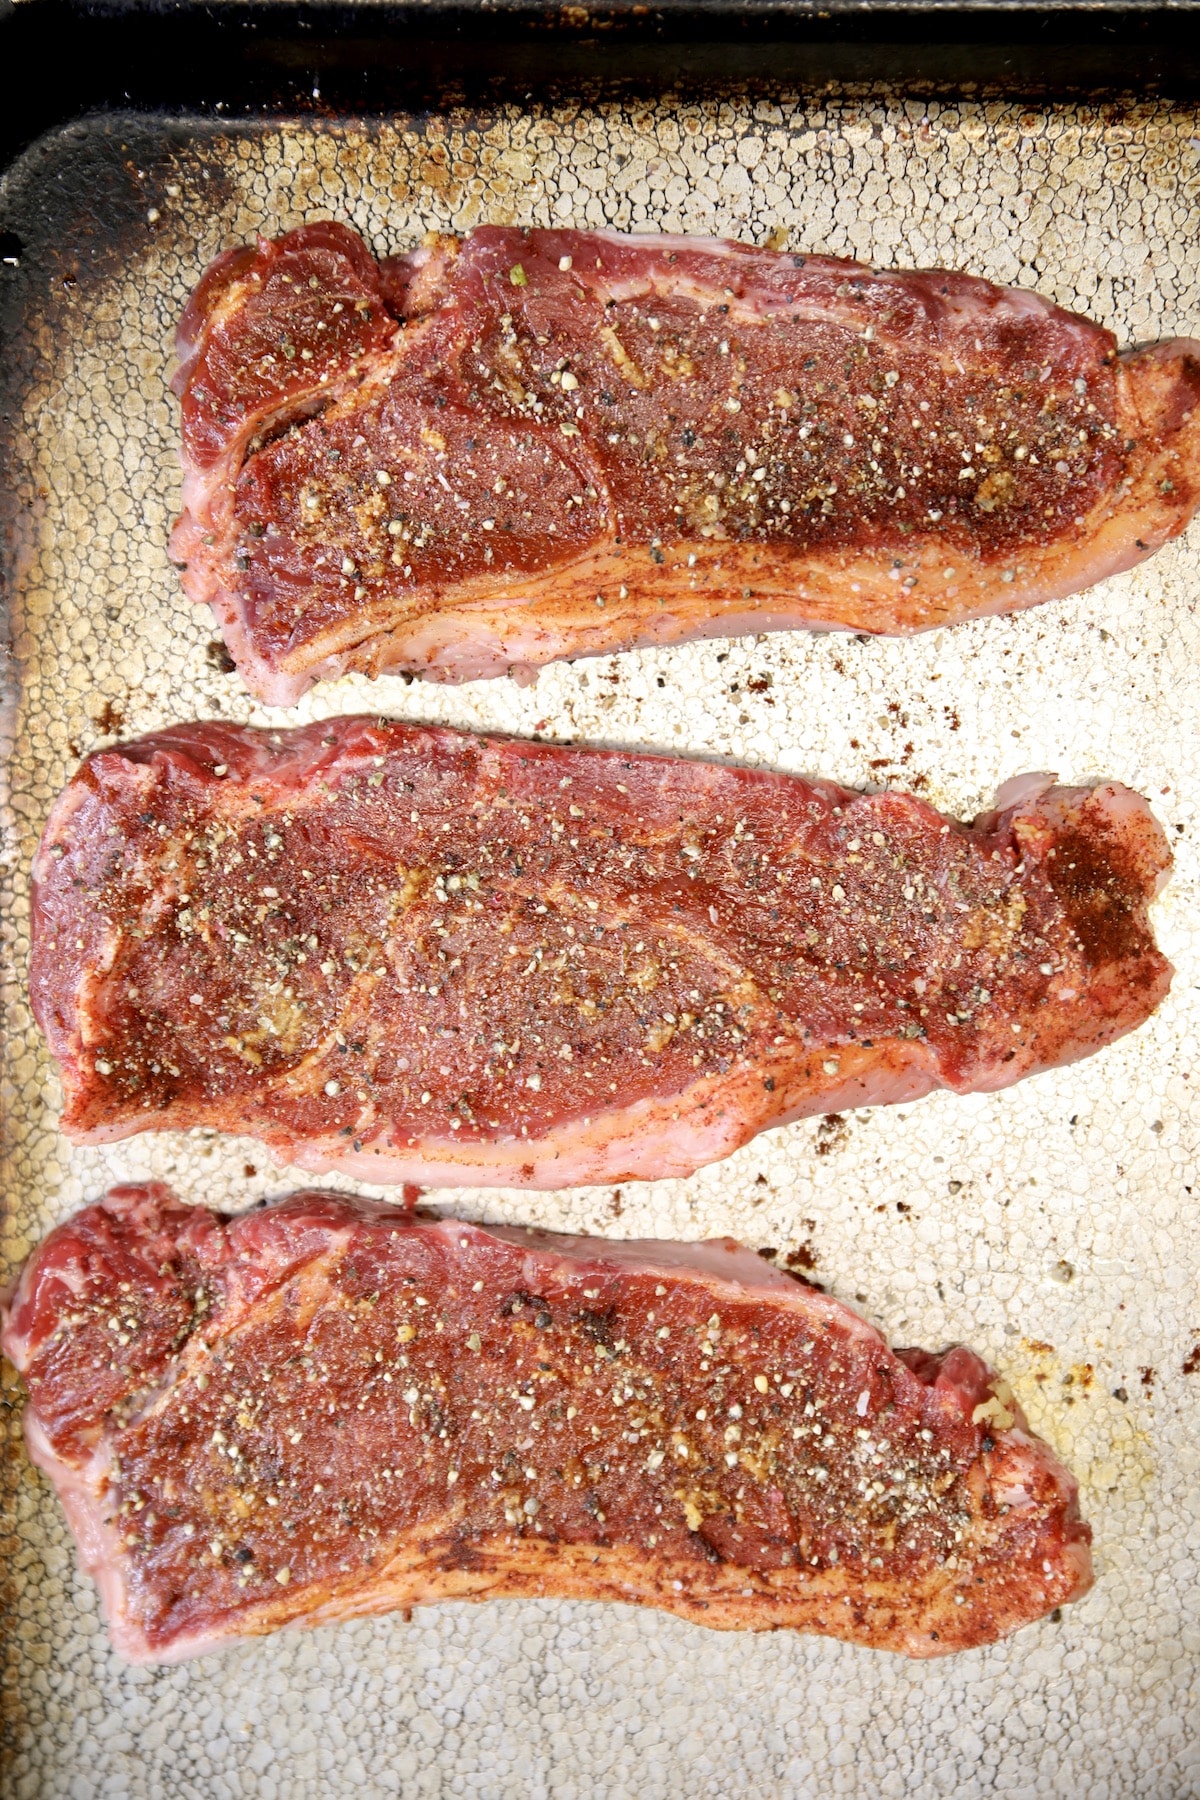 Seasoned strip steaks ready to grill.